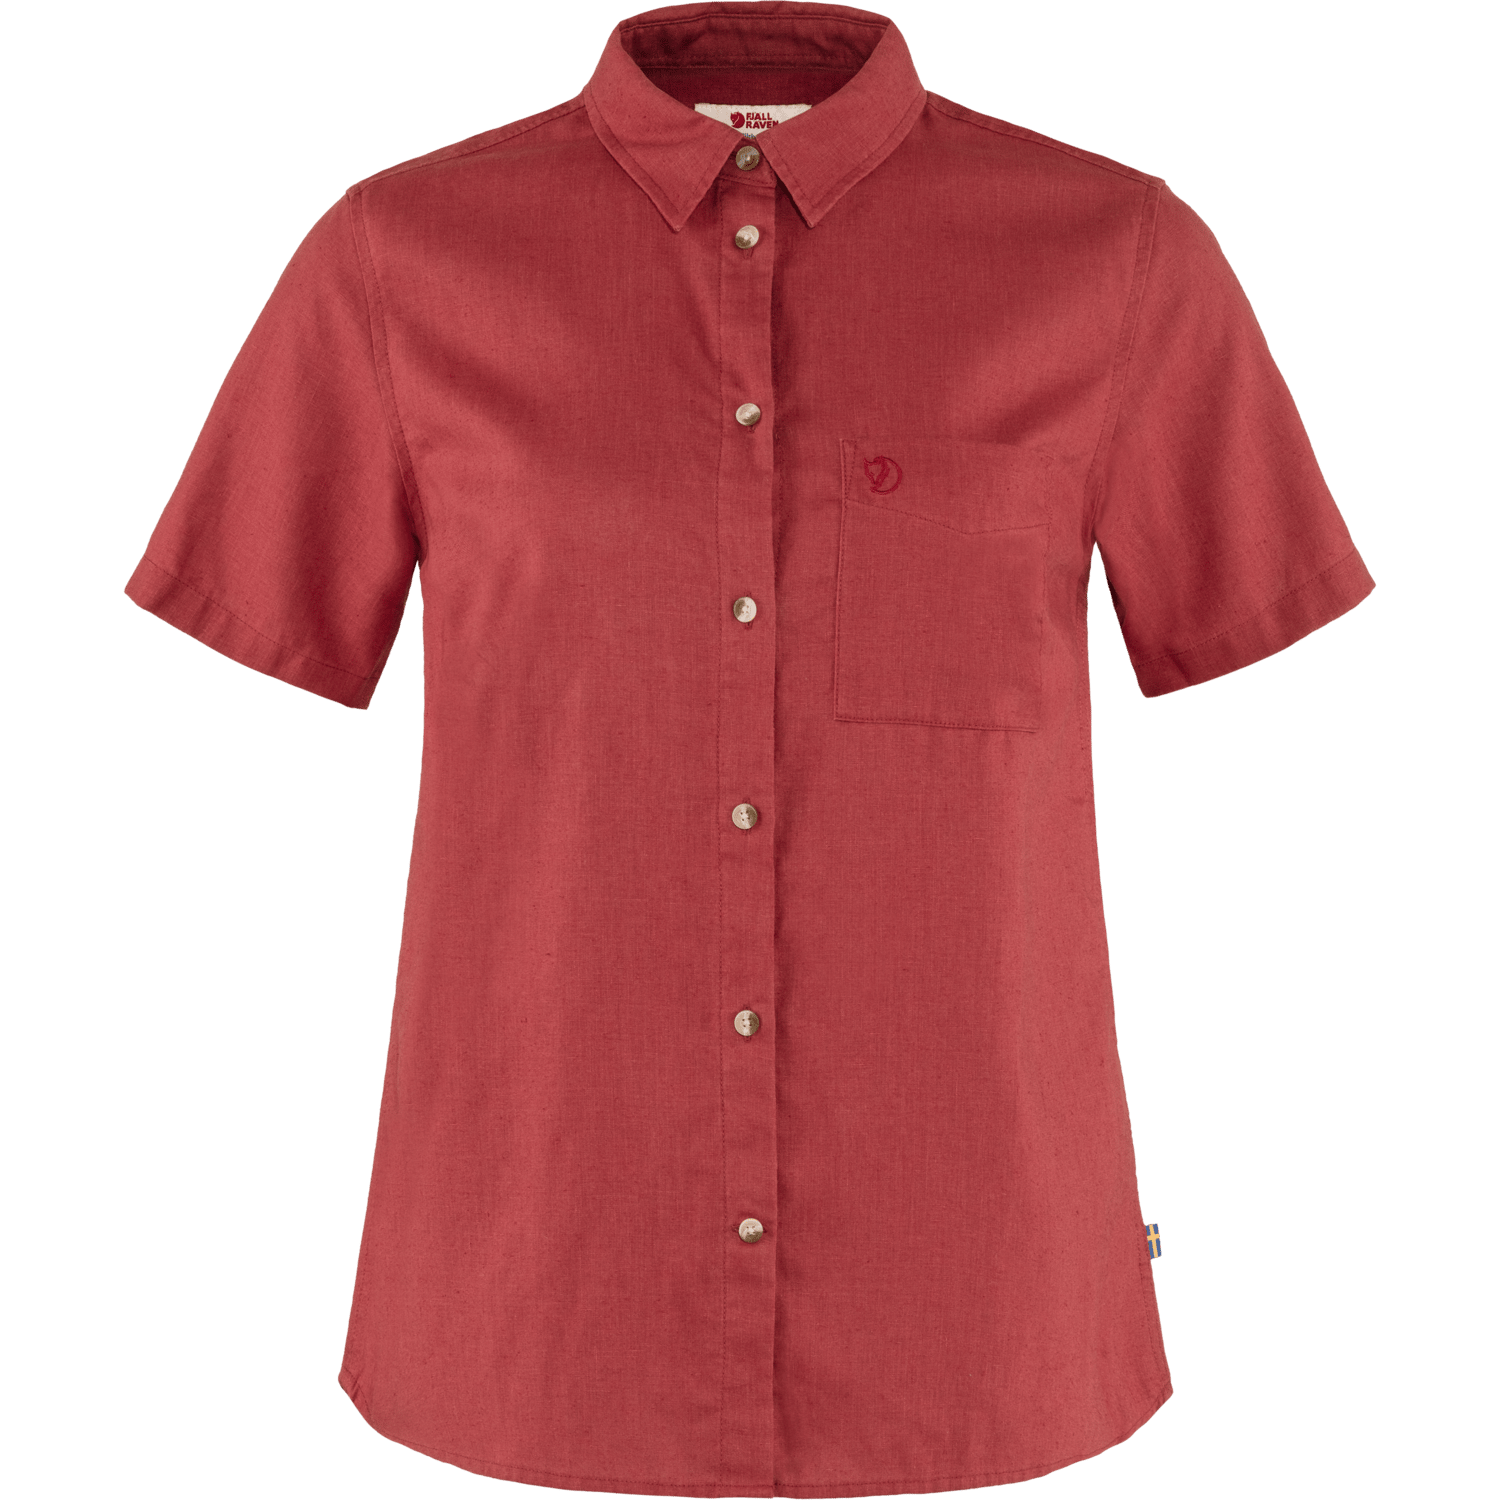 Women's Övik Travel Shirt SS Raspberry Red